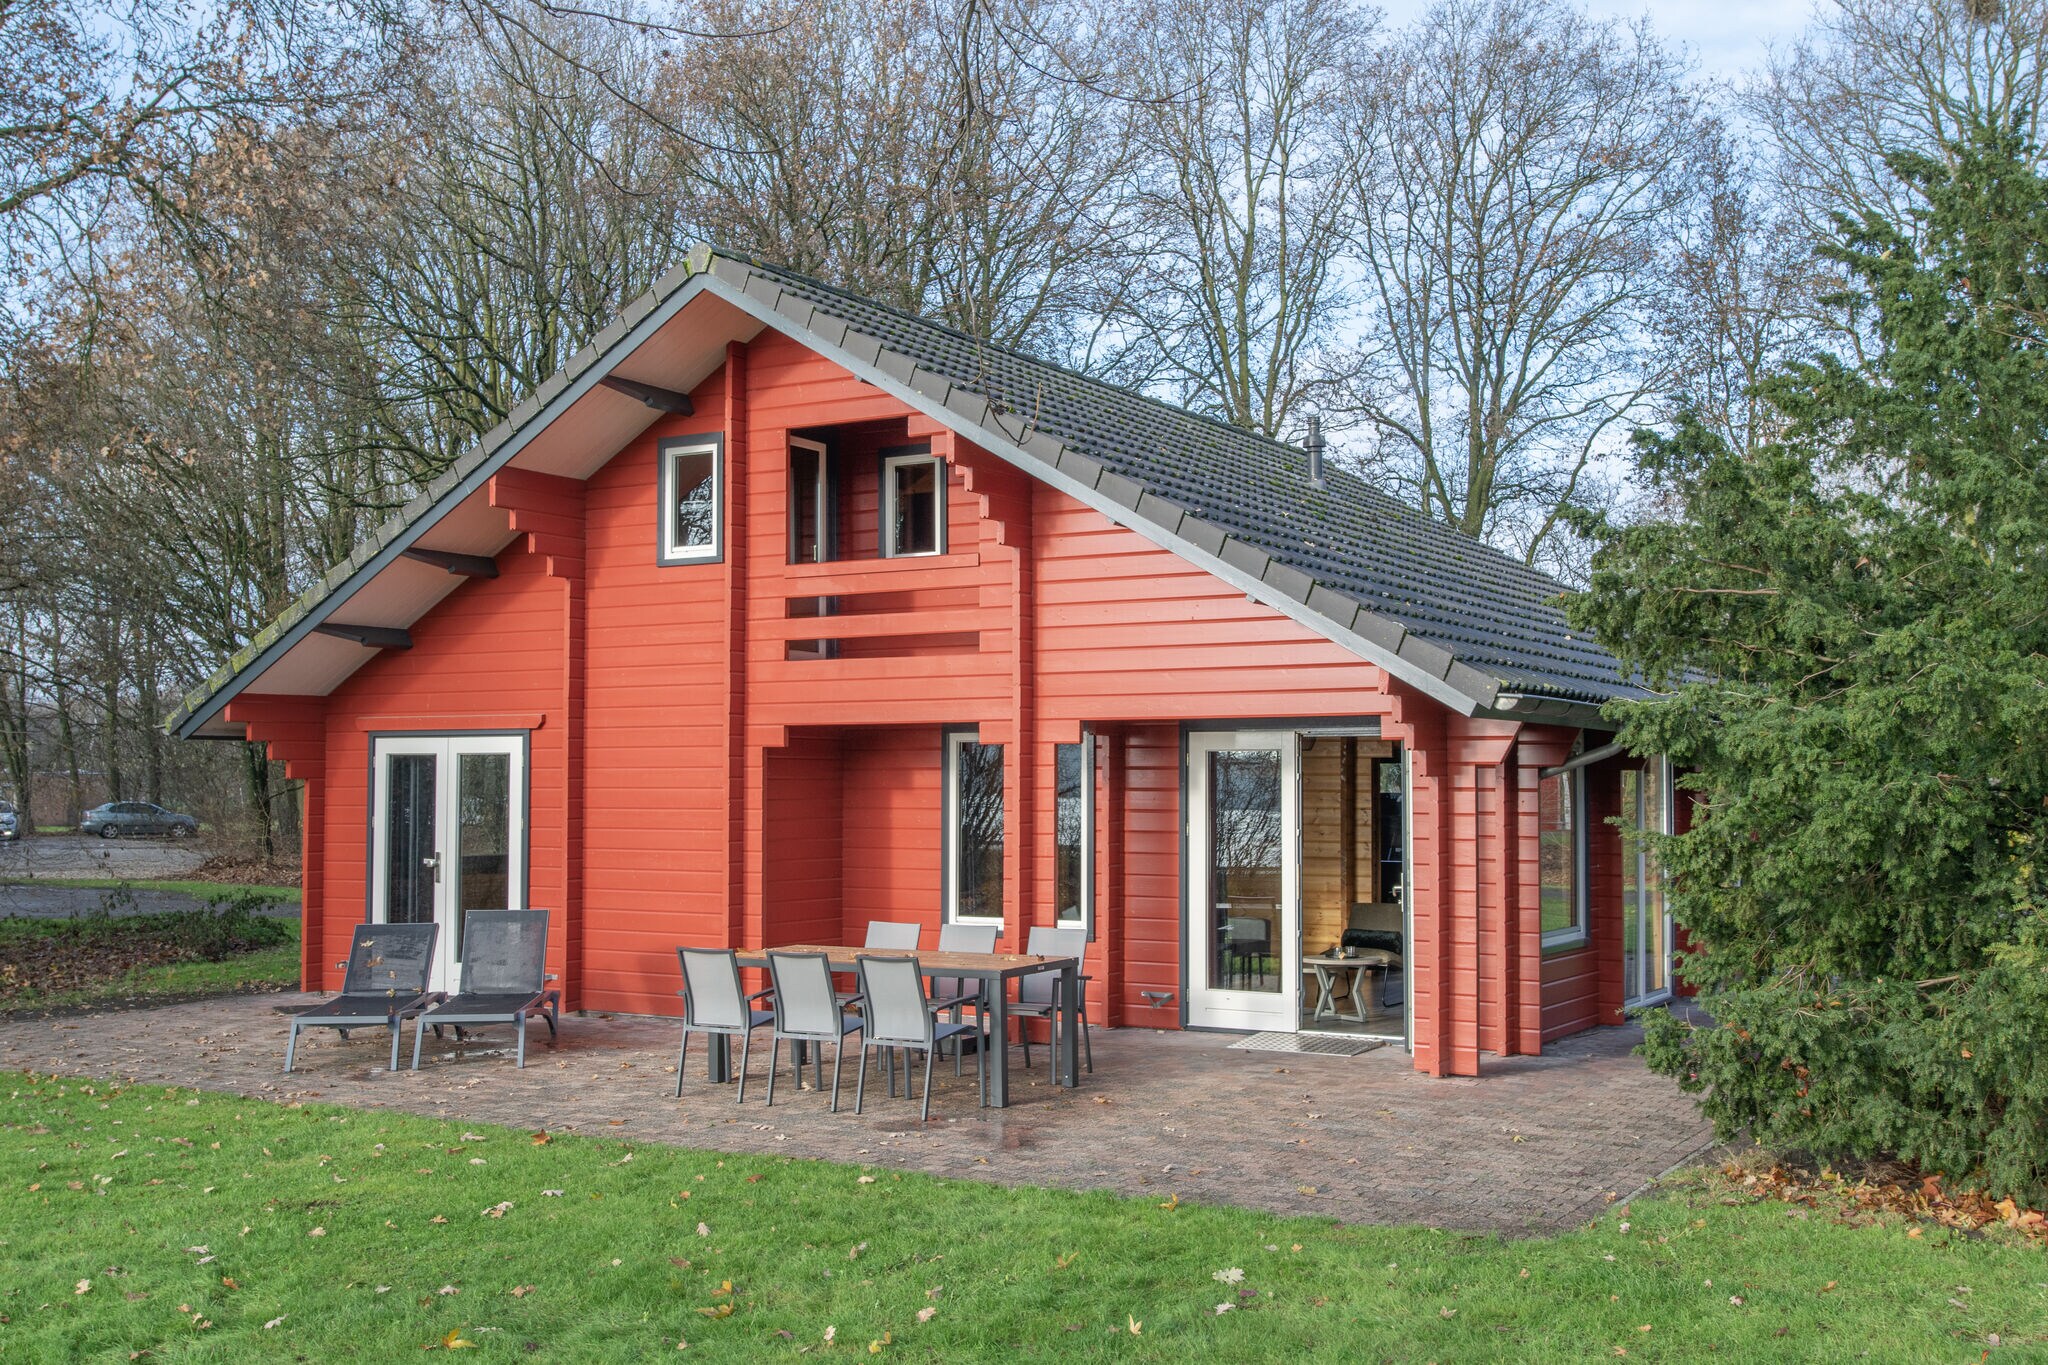 Neu gestaltete Holzhütte in einem Ferienpark in der Nähe der Maasduinen